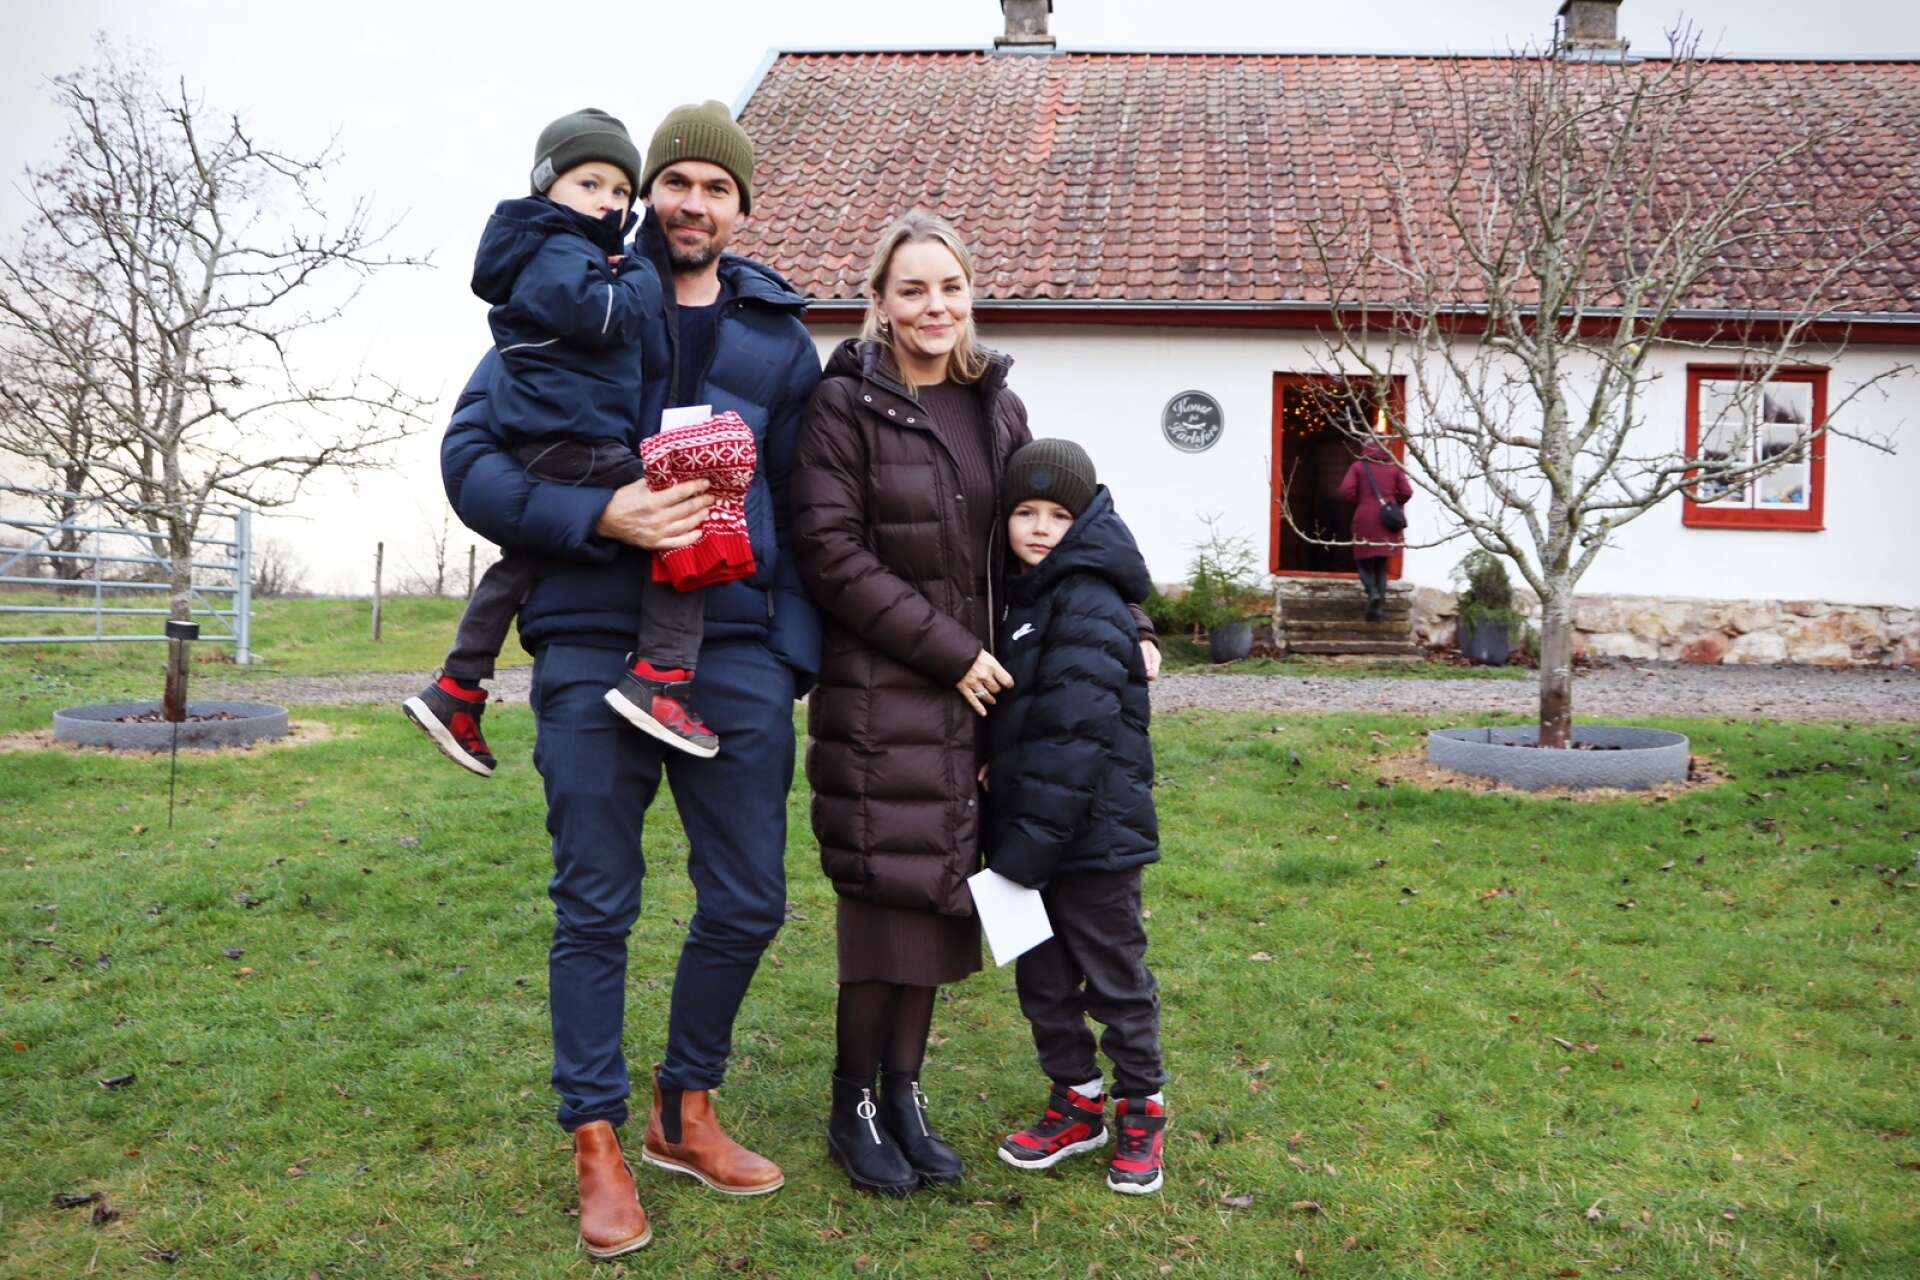 Tobias Svensson och Evelina Engdahl från Lidköping besökte julmarknaden med sönerna Teodor 3 år och William 6 år för att komma i julstämning.